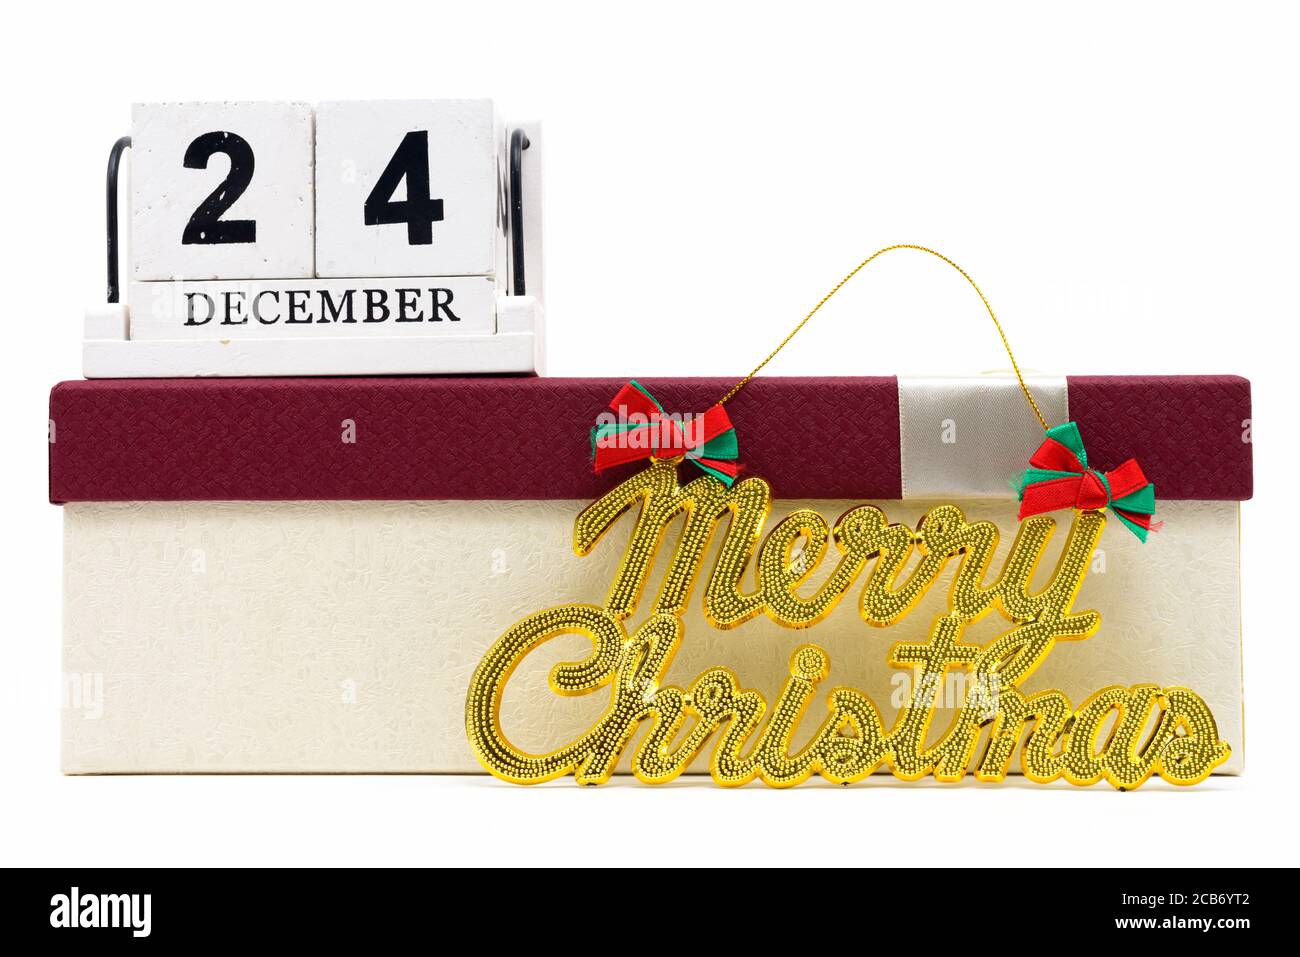 Cadeau de Noël avec texte Joyeux de Noël sur fond blanc avec Calendrier du 24 décembre Banque D'Images